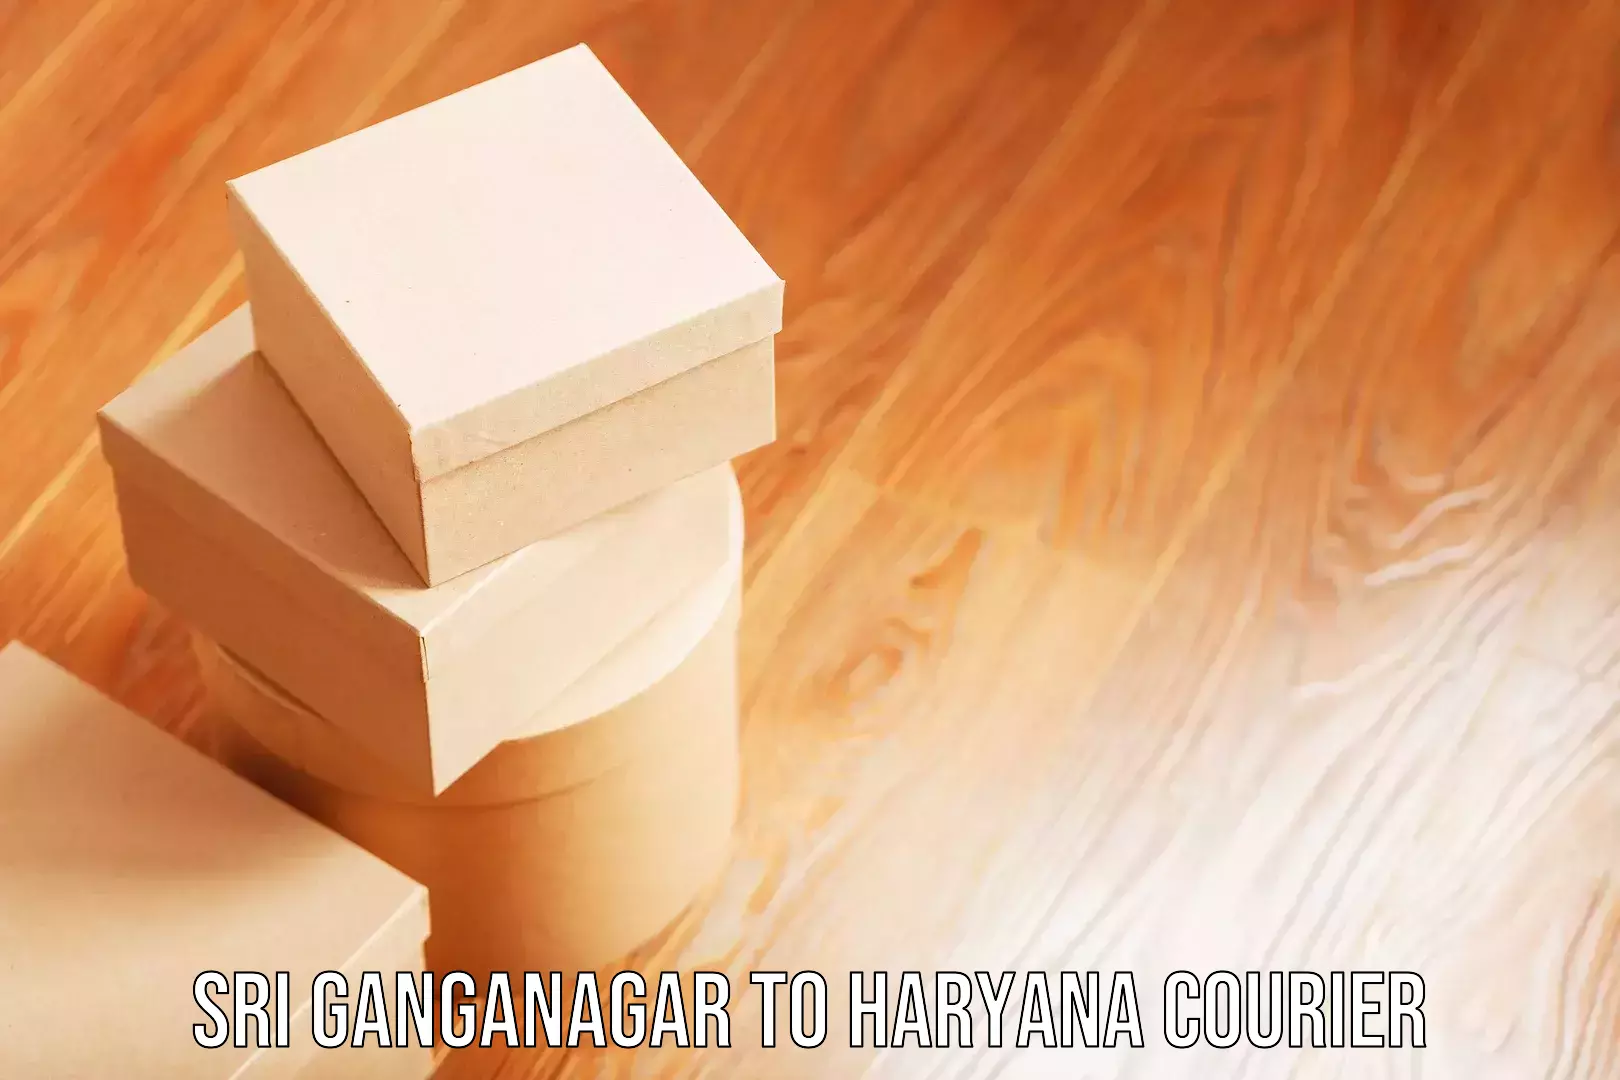 Corporate baggage transport Sri Ganganagar to Haryana